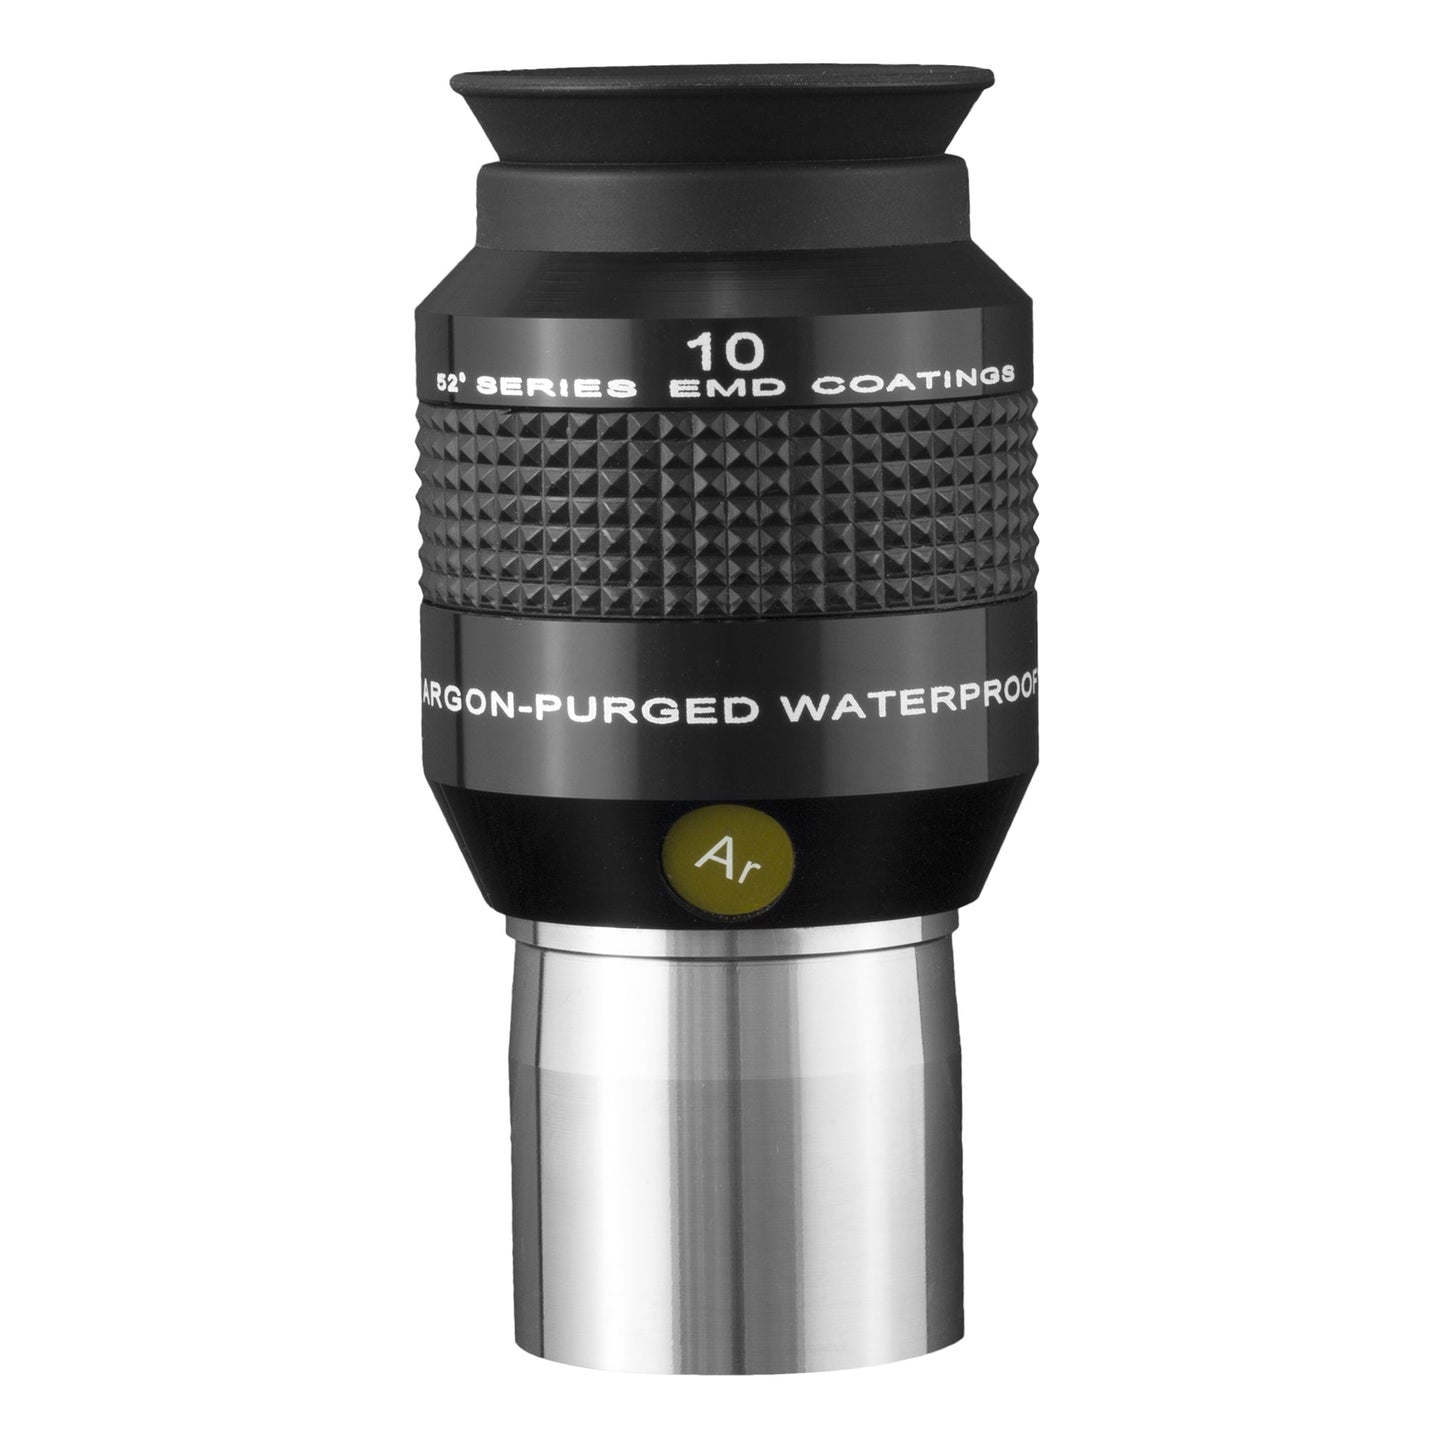 Explore Scientific 52° Series 10mm Waterproof Eyepiece EPWP5210-01